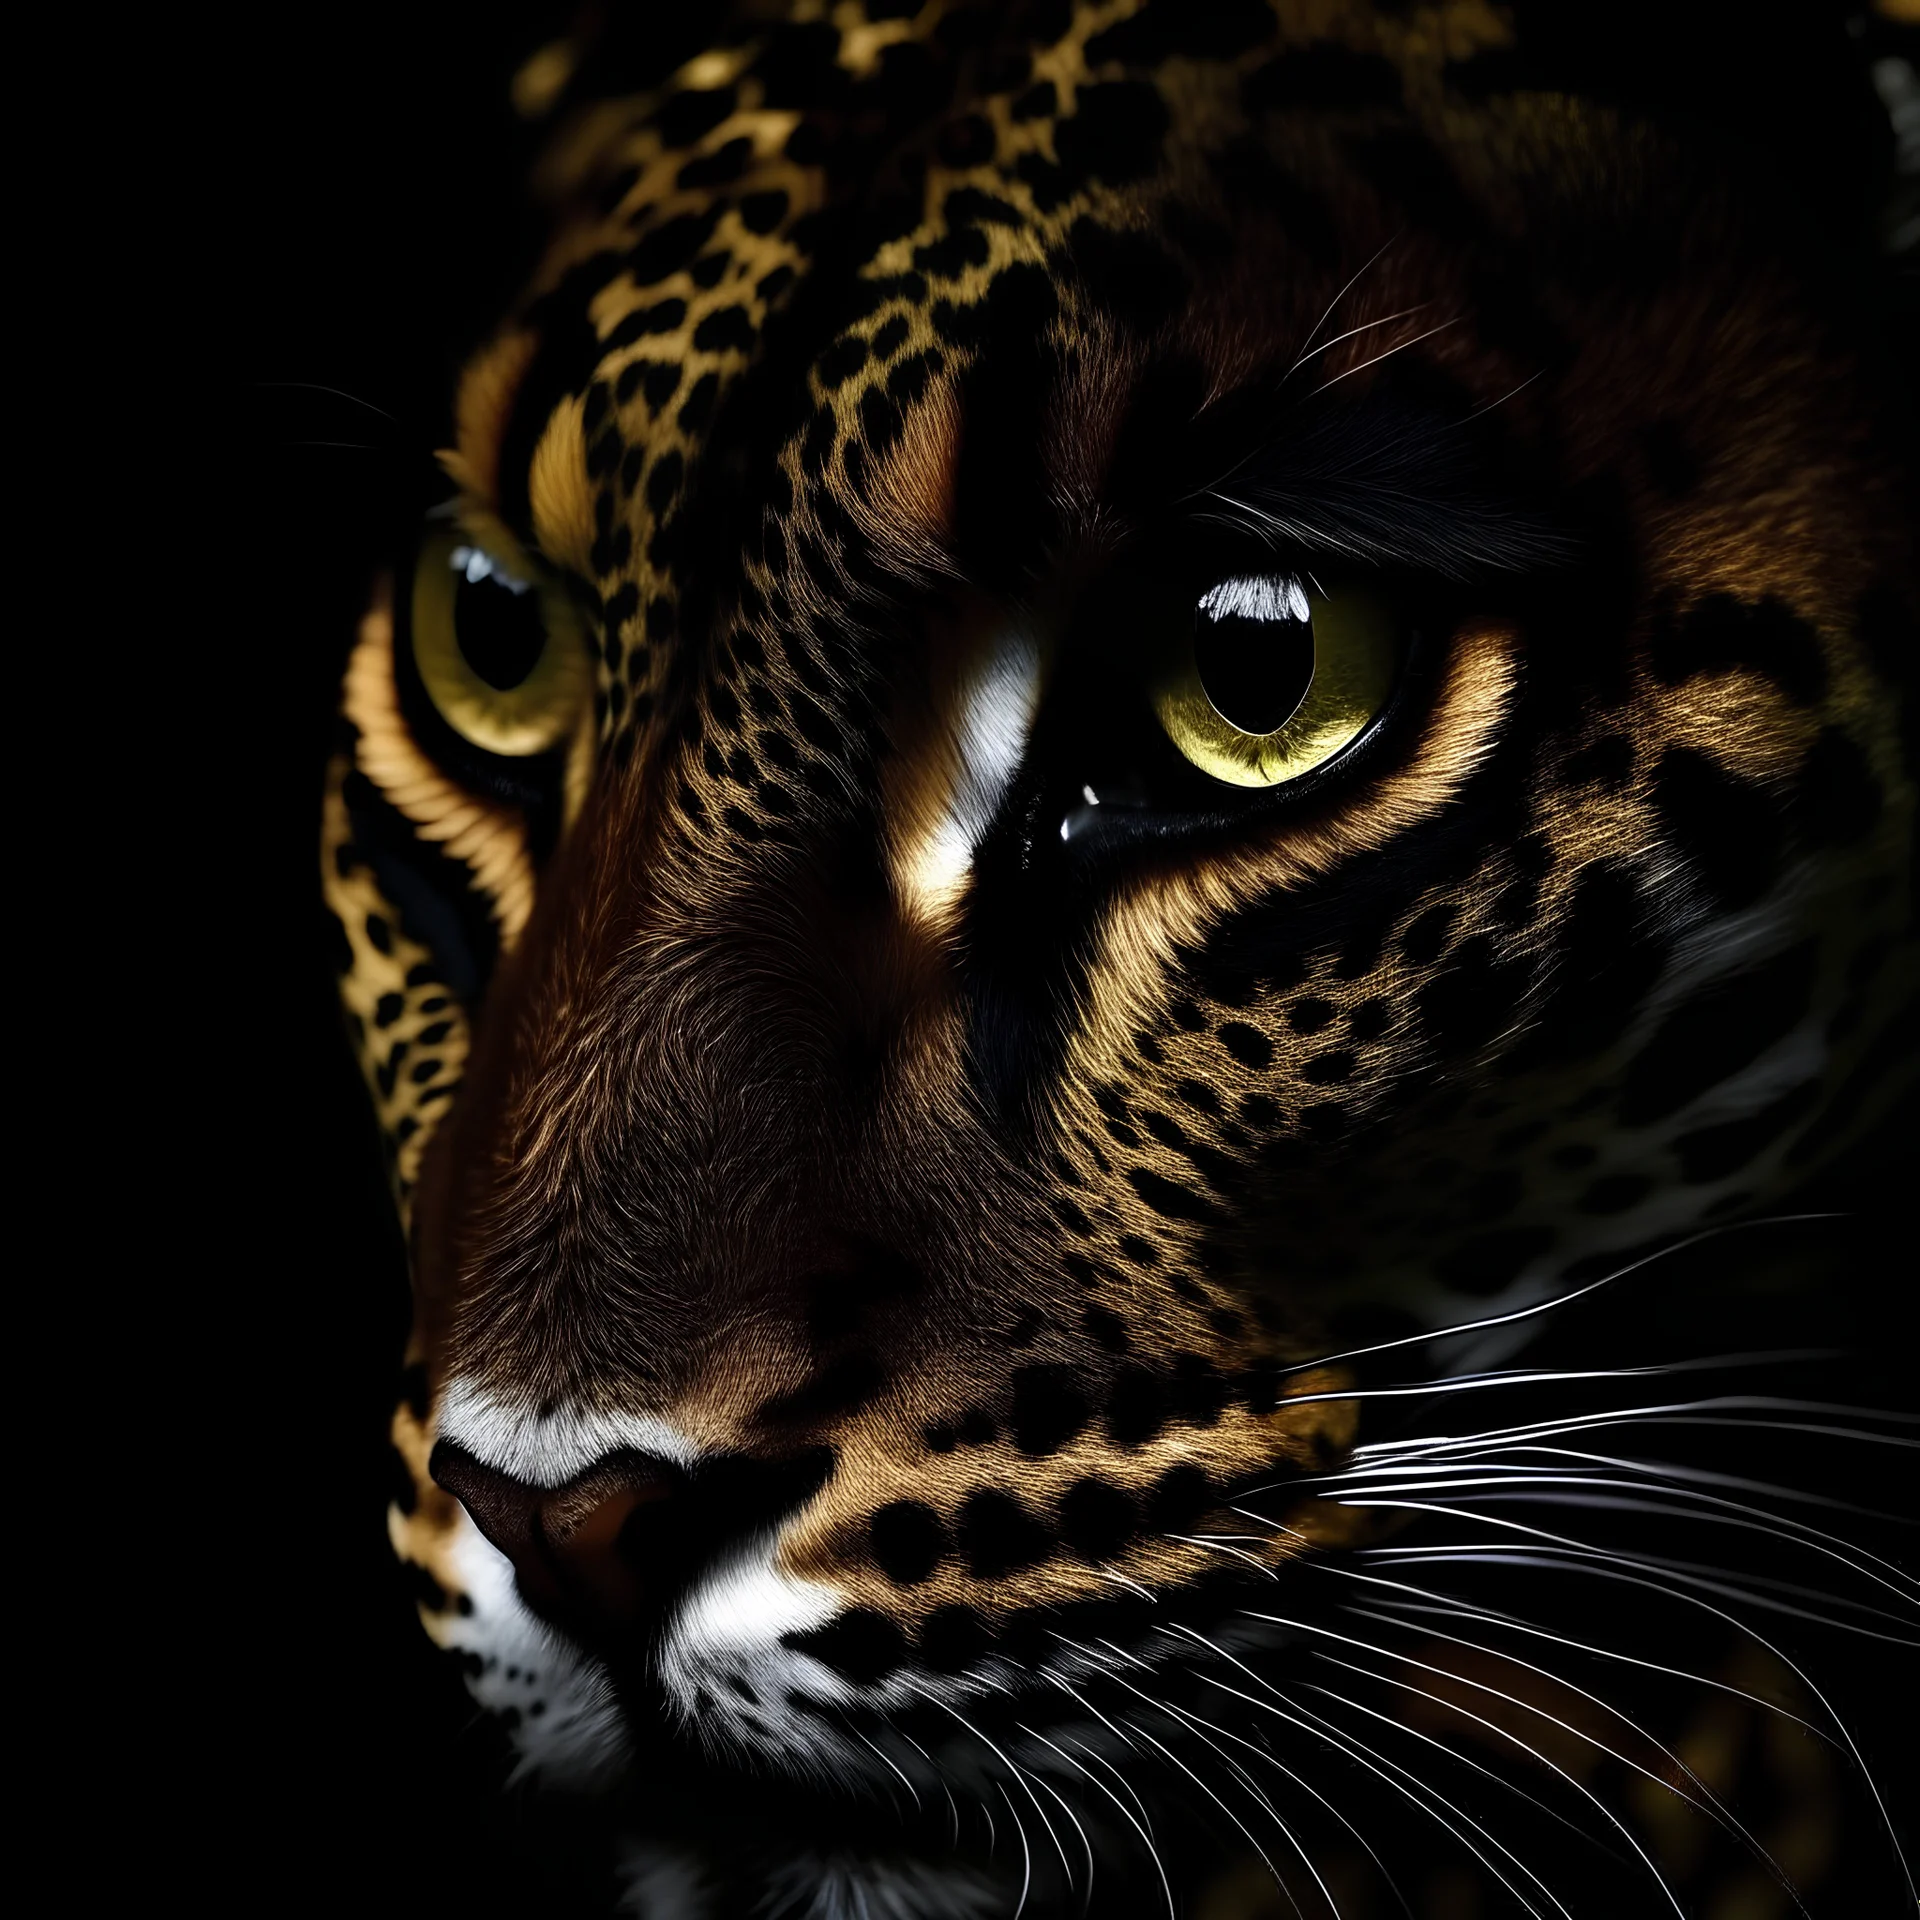 Leopard eyes in the dark